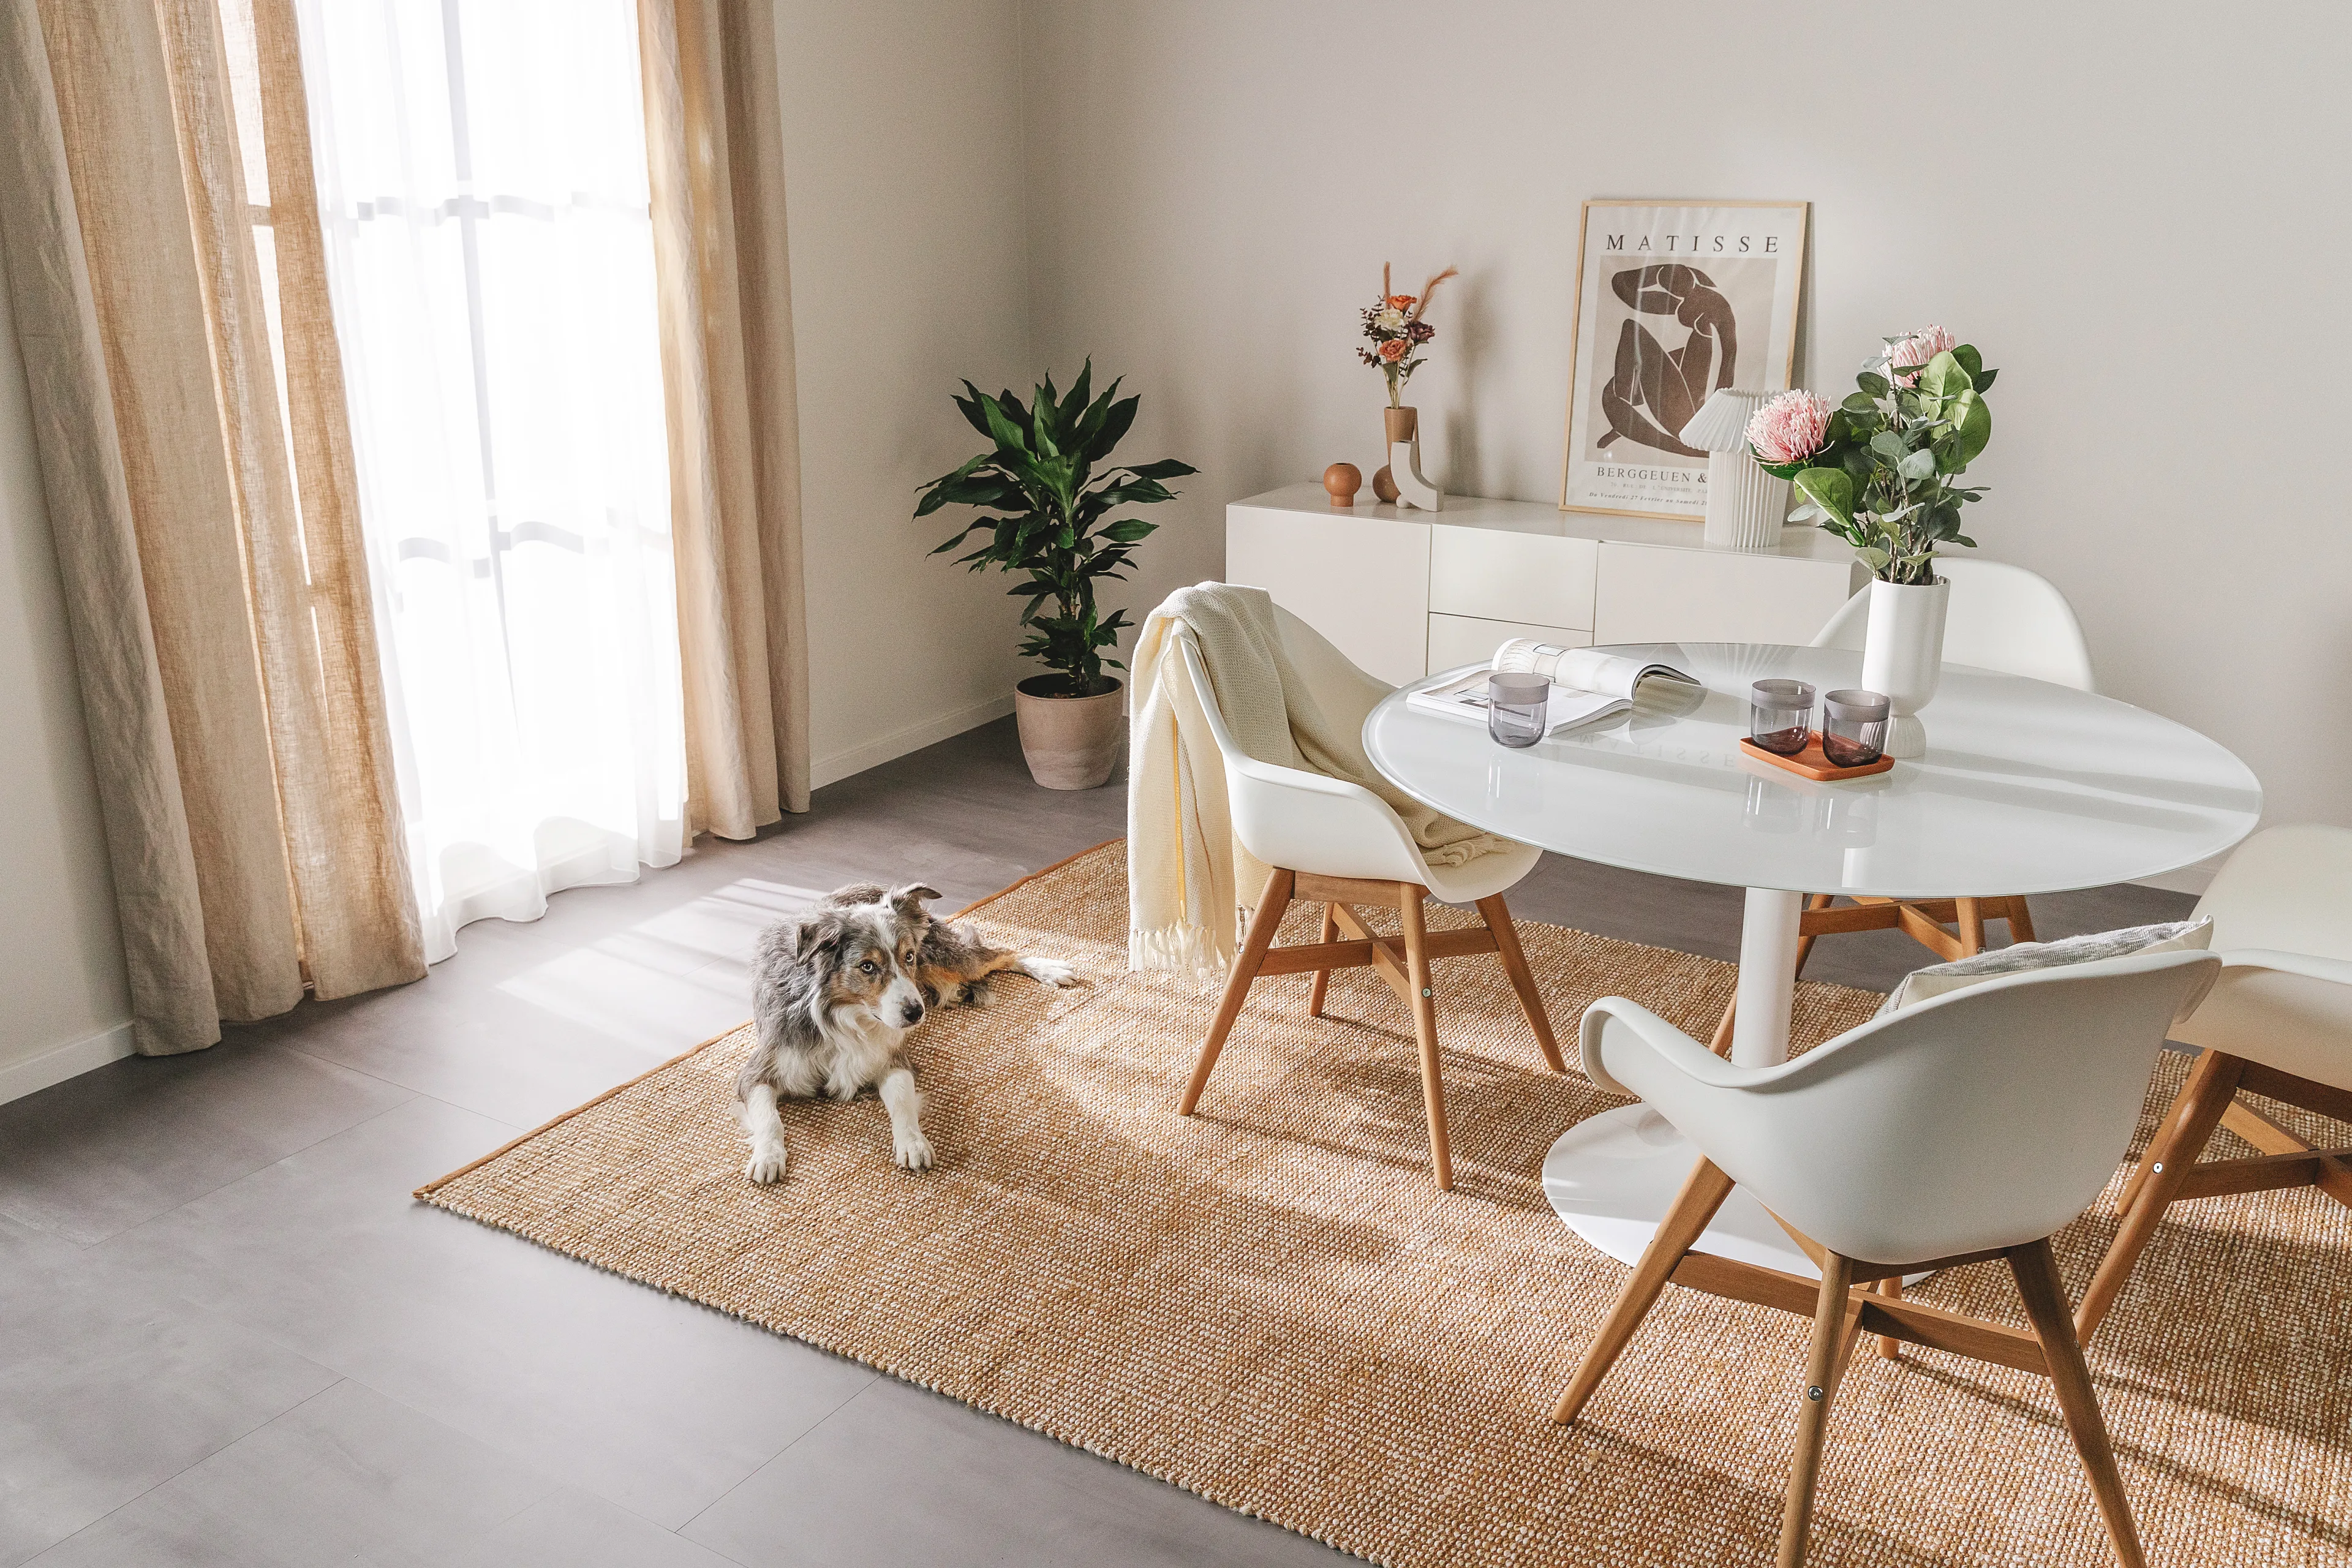 Helles Esszimmer im Skandi-Style mit einem Juteteppich, auf dem ein großer Hund liegt